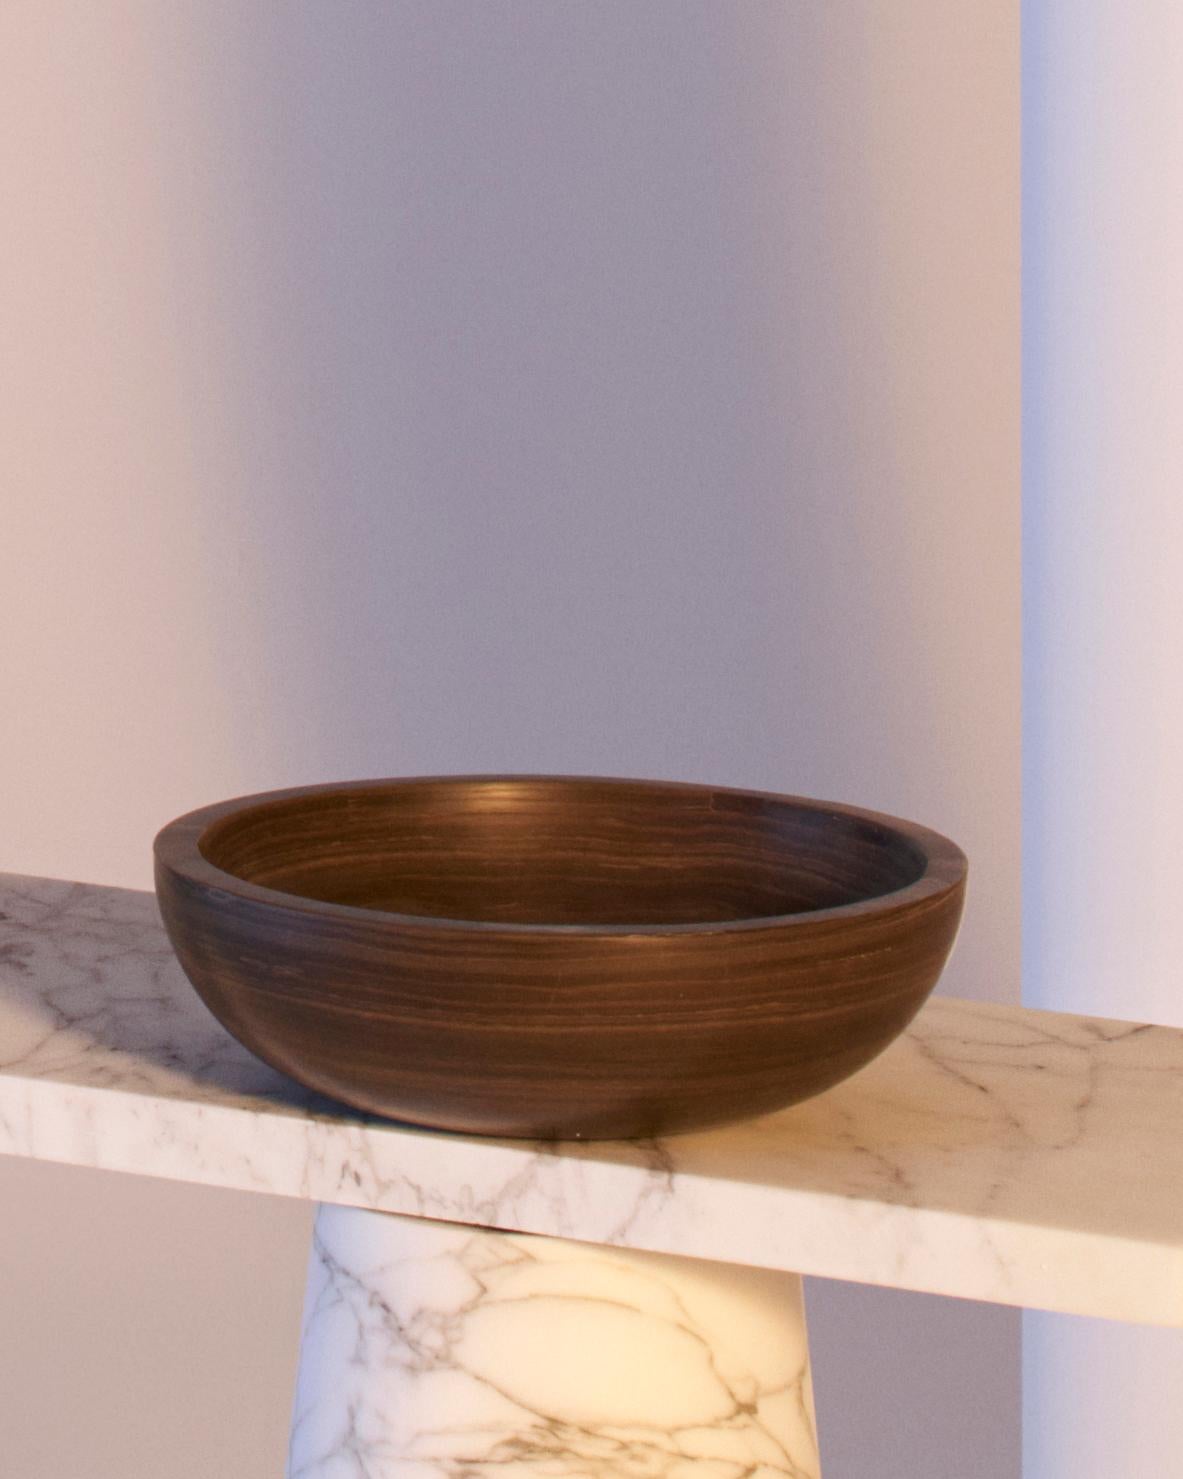 Inside Out Fruit Bowl en marbre Tobacco Brown, conçu par la designer de renommée internationale Karen Chekerdjian - il est également disponible dans d'autres couleurs.
Elle fait partie de la Collection S'épanouir - tables et accessoires (coupes à